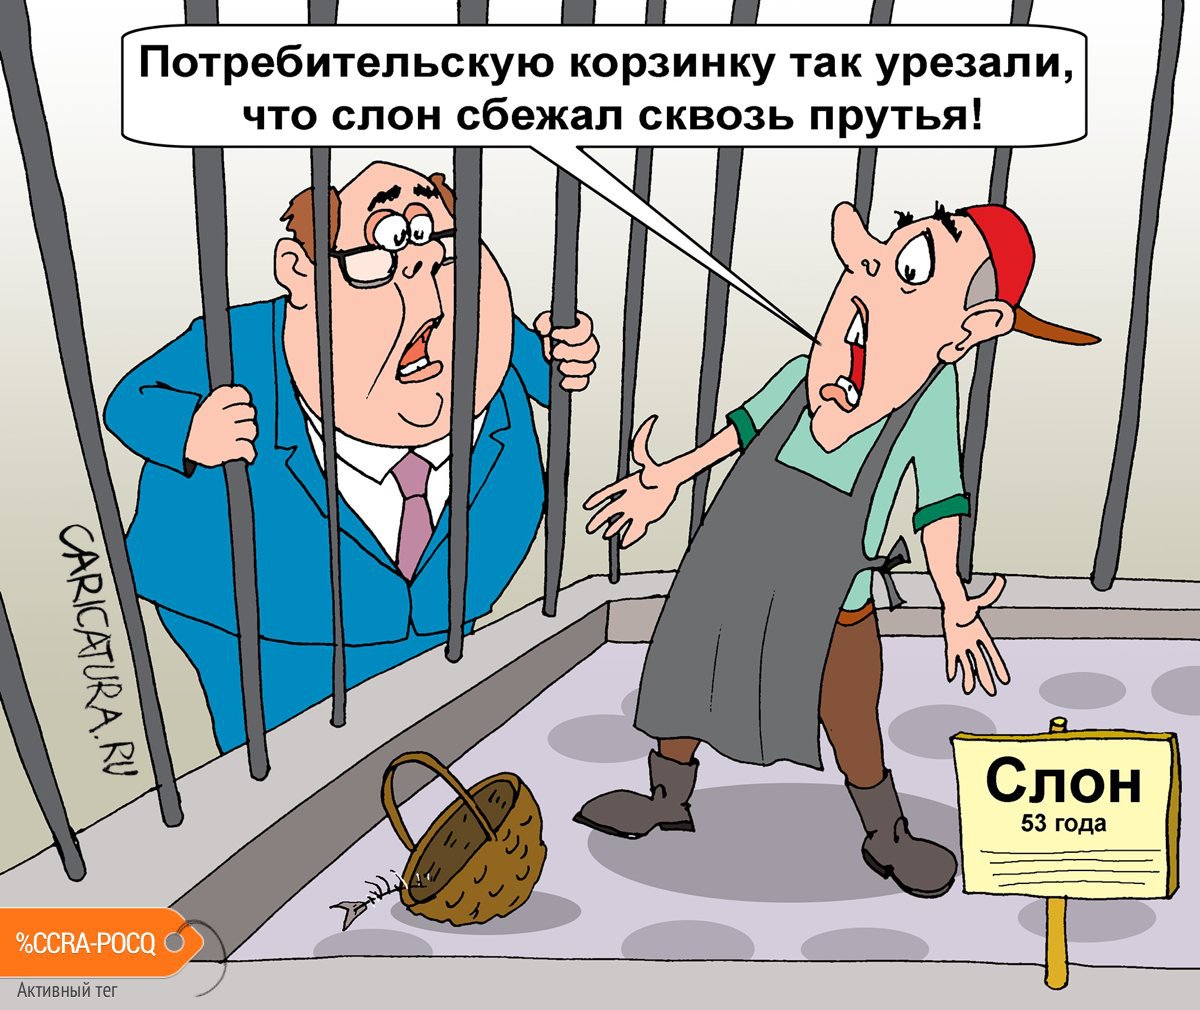 Карикатура "Потребительская корзинка для слона", Евгений Кран